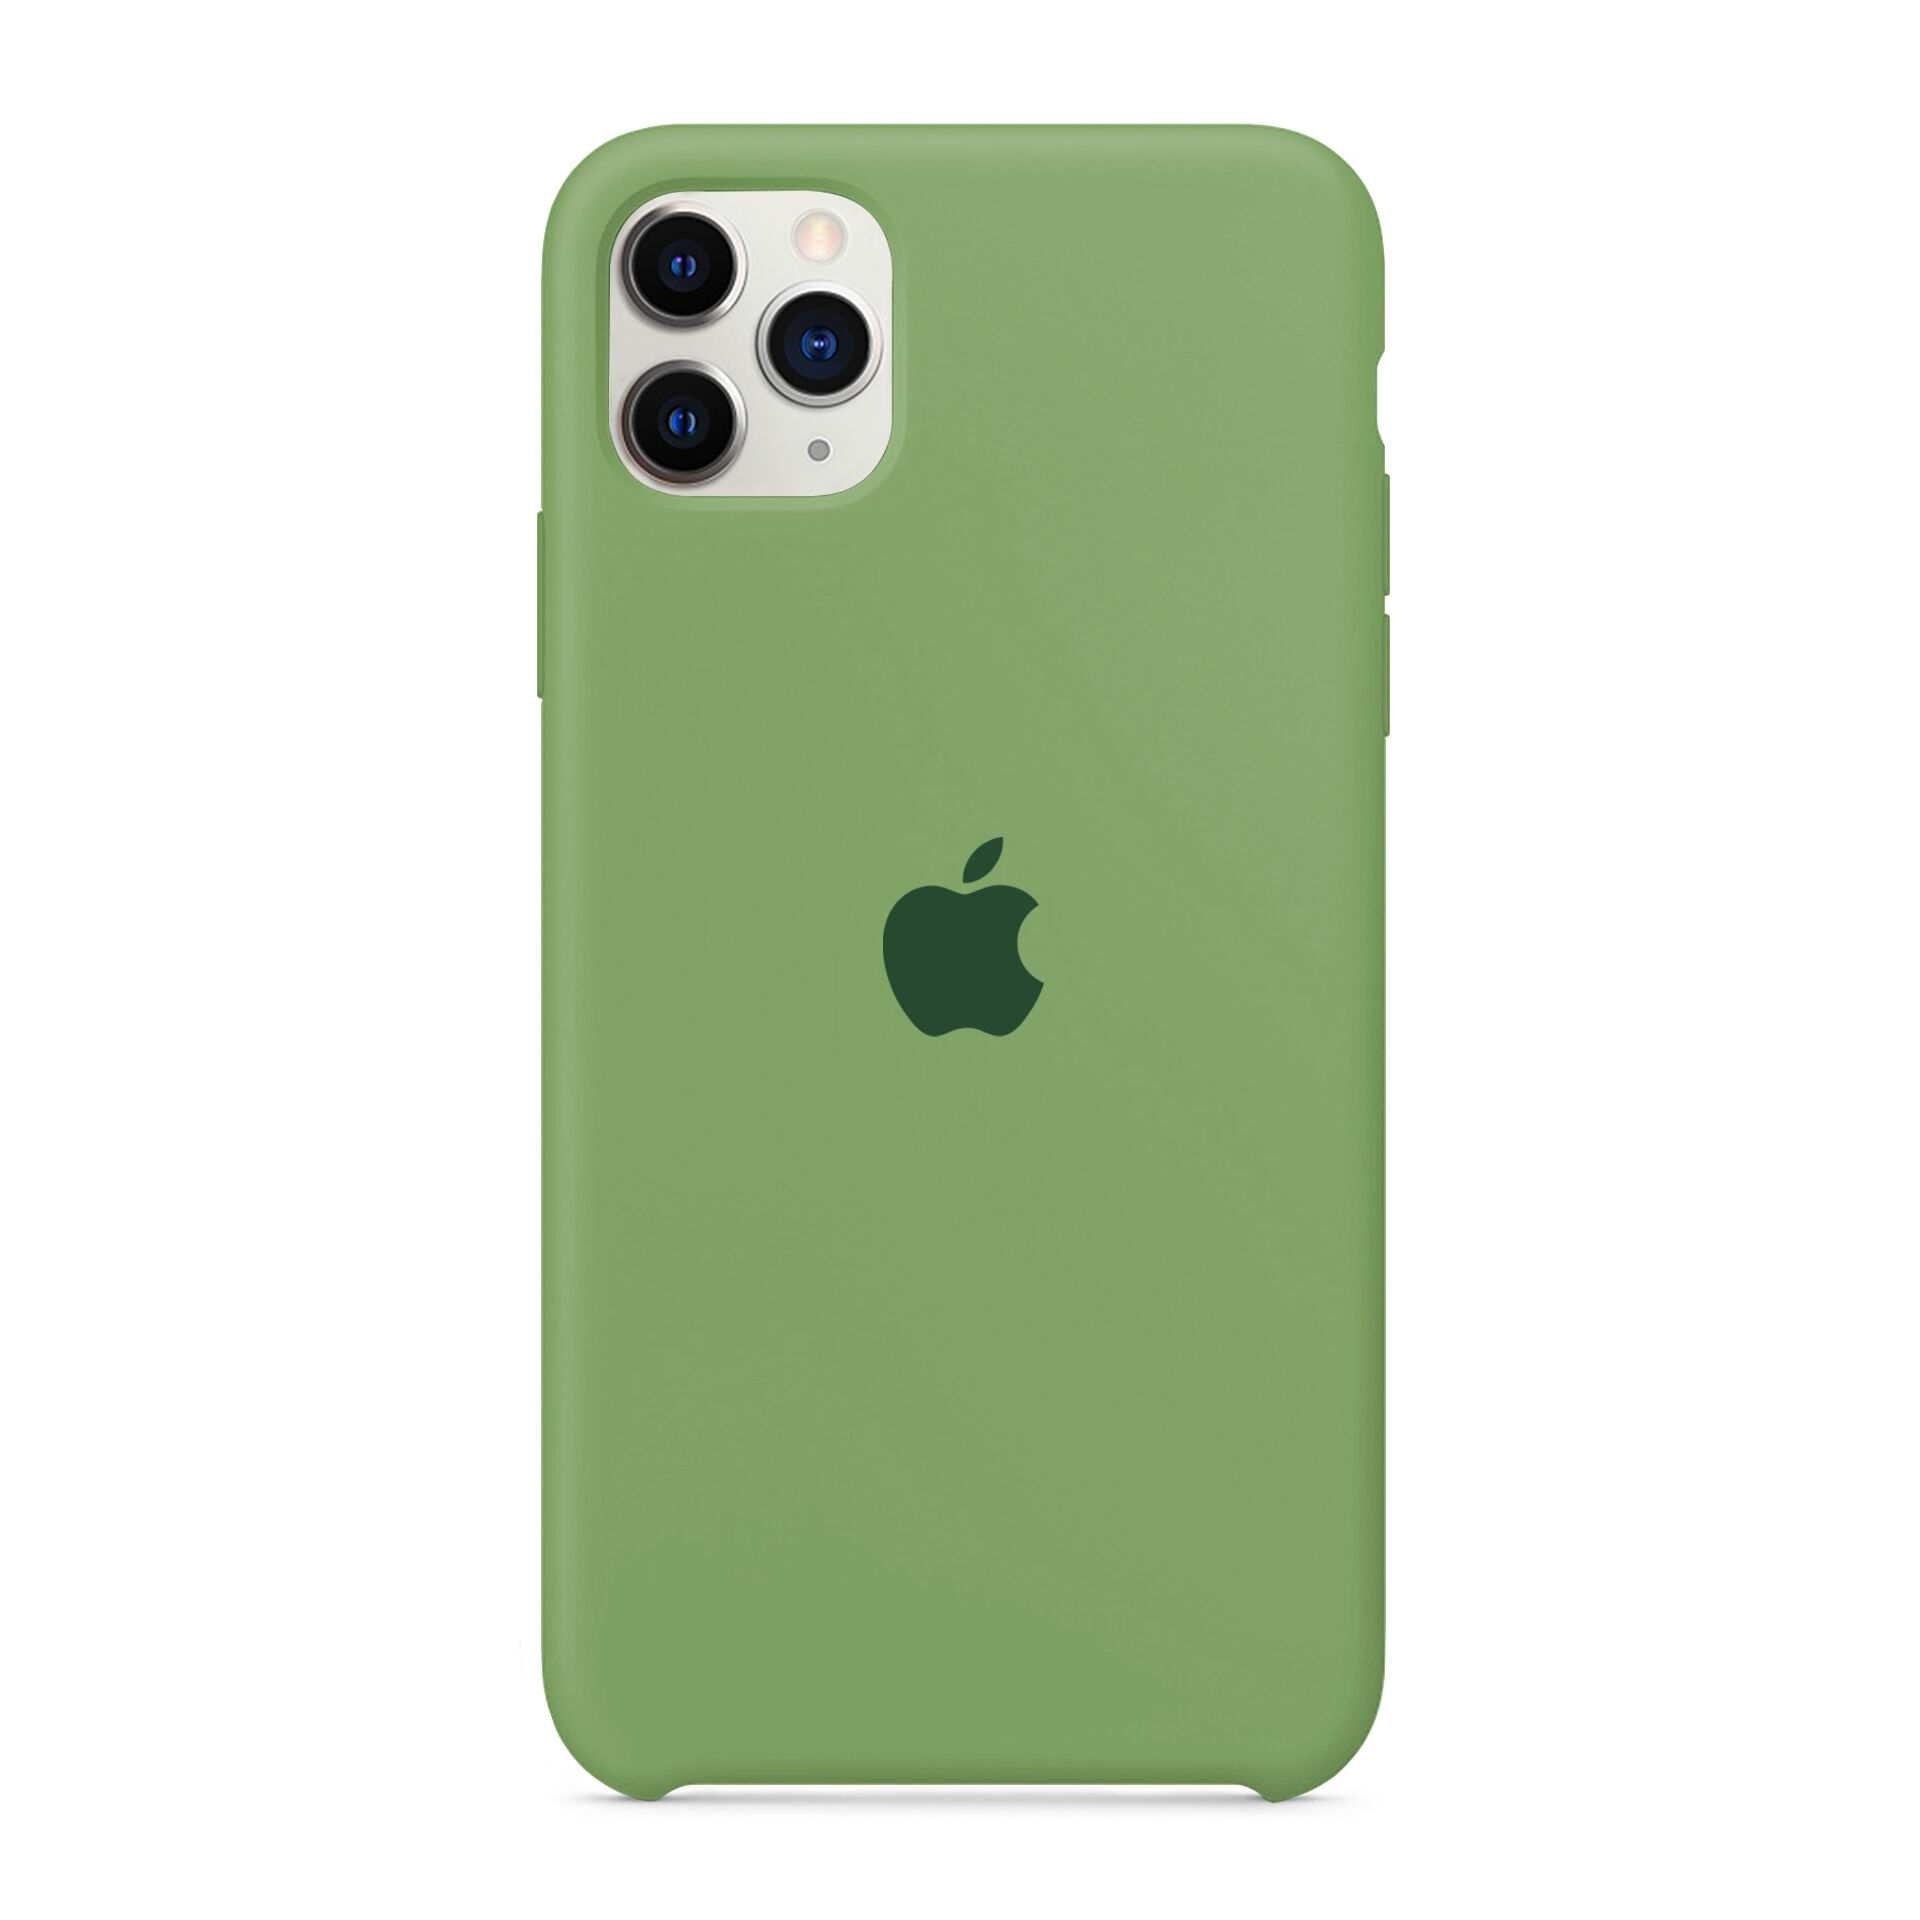 Apple Capa silicone Verde claro iPhone 11 Pro Max